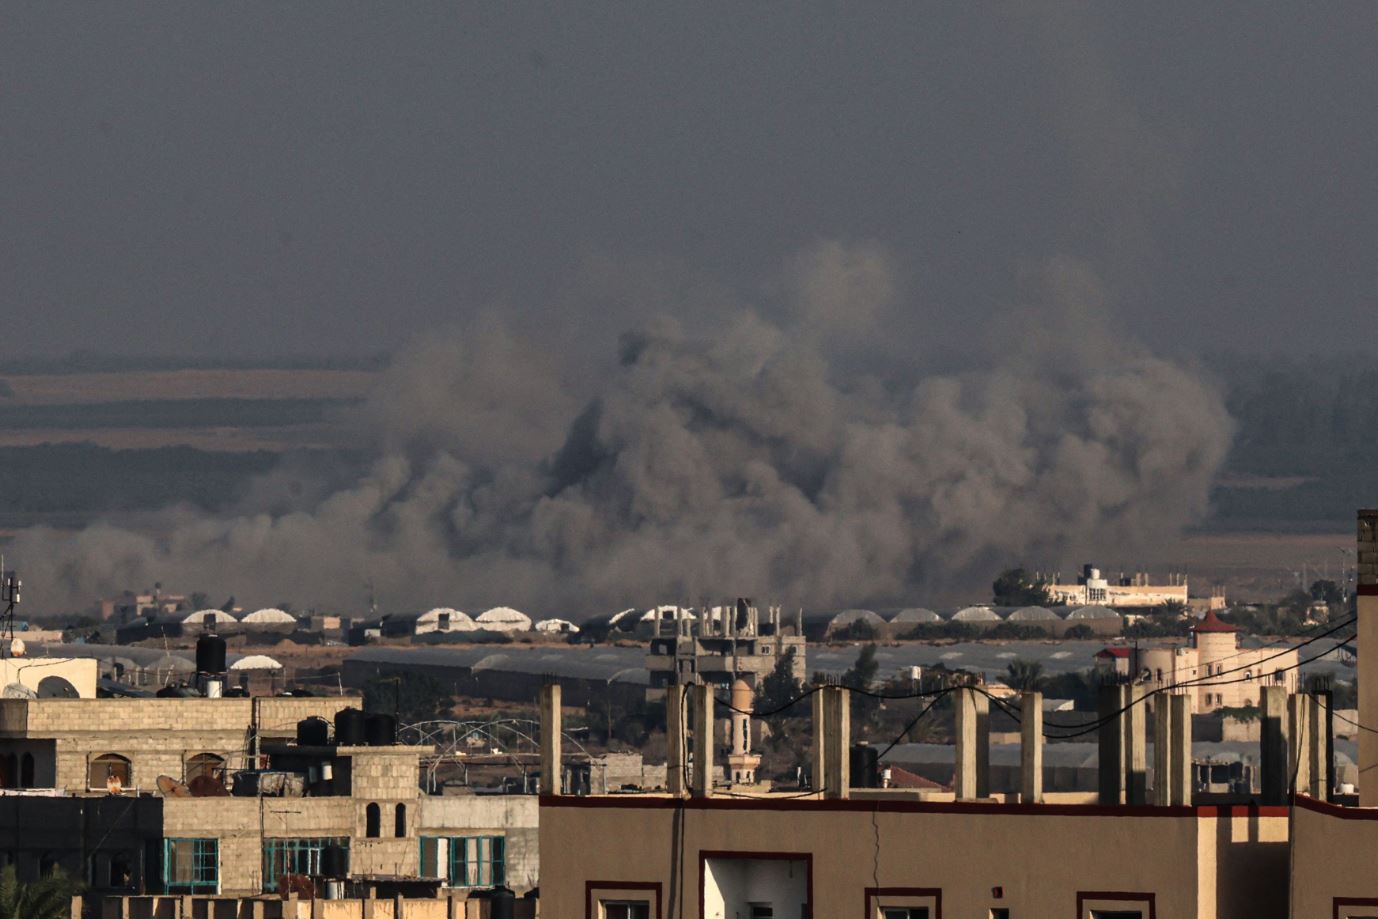 وزارة الدفاع الأمريكية تكشف عن تحليق مسيرات أمريكية فوق غزة للمساعدة في إعادة الرهائن